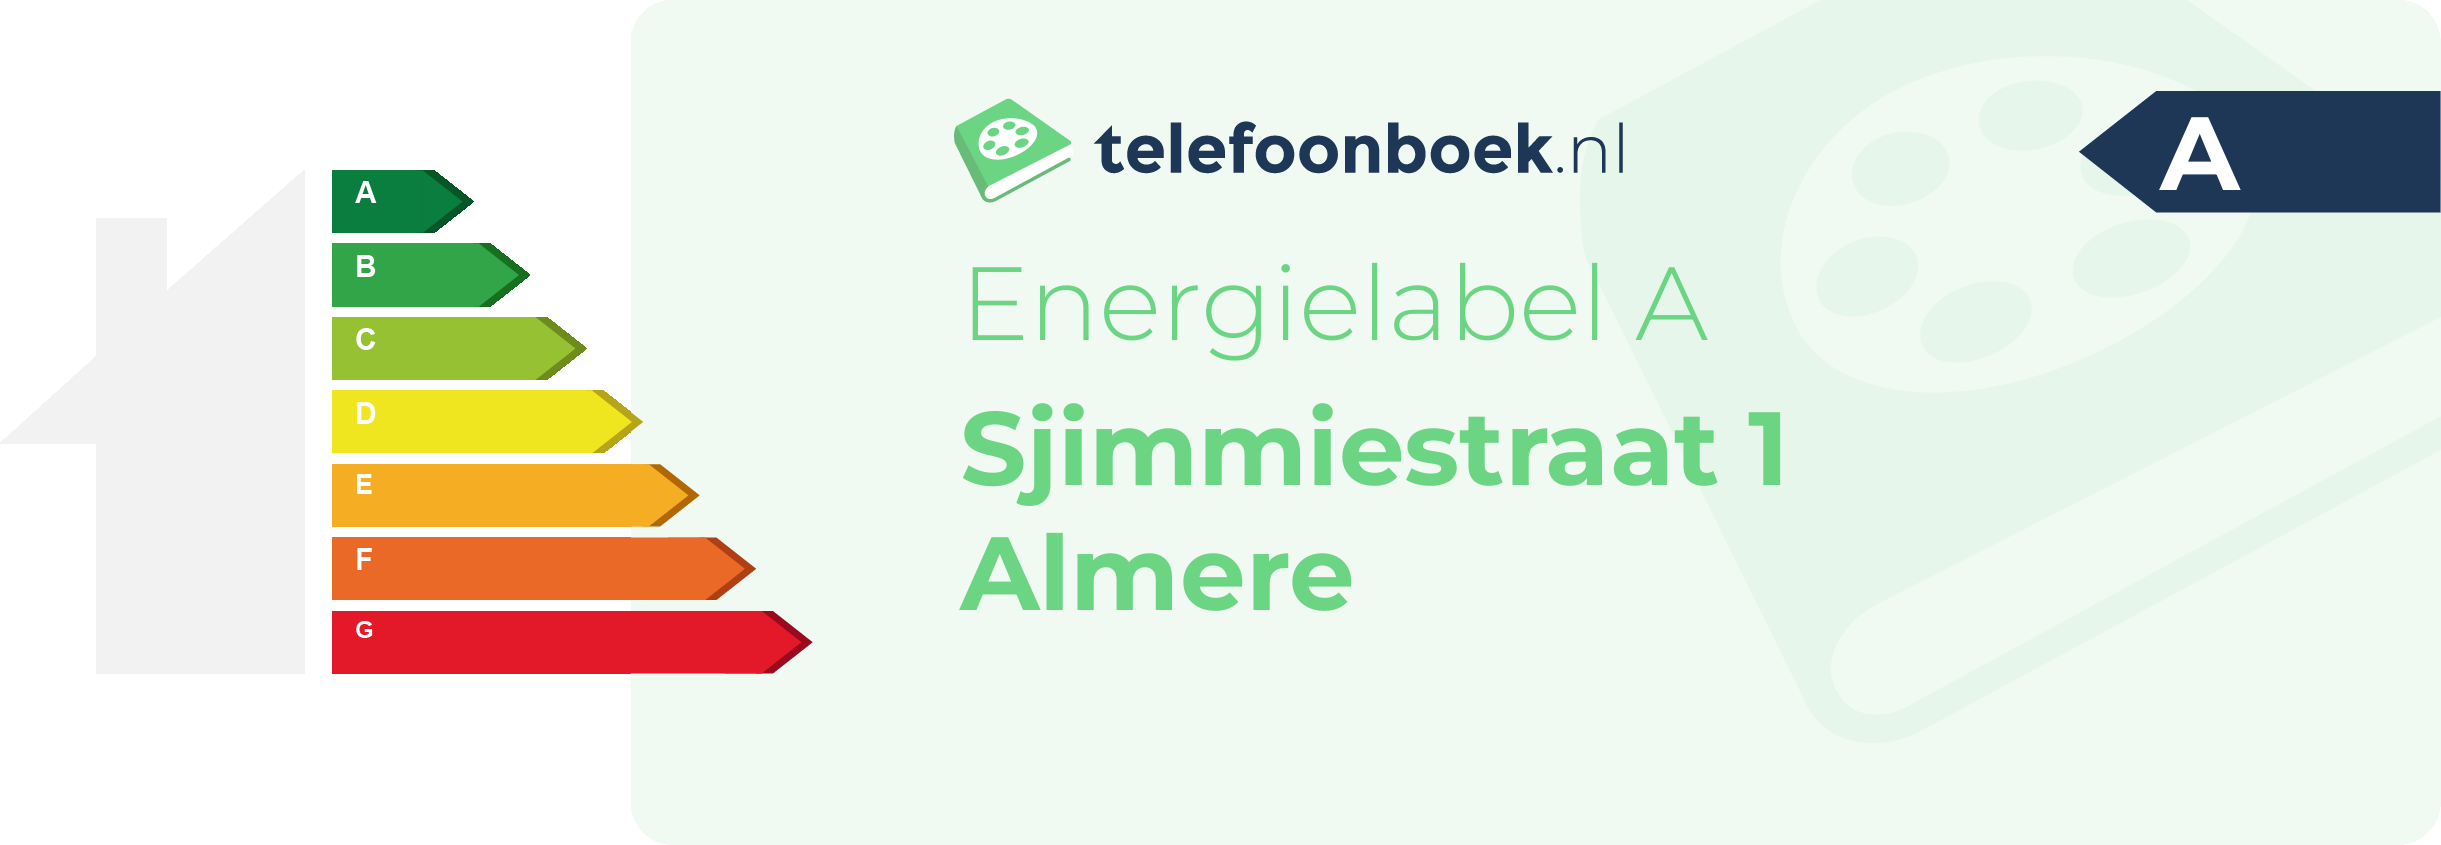 Energielabel Sjimmiestraat 1 Almere